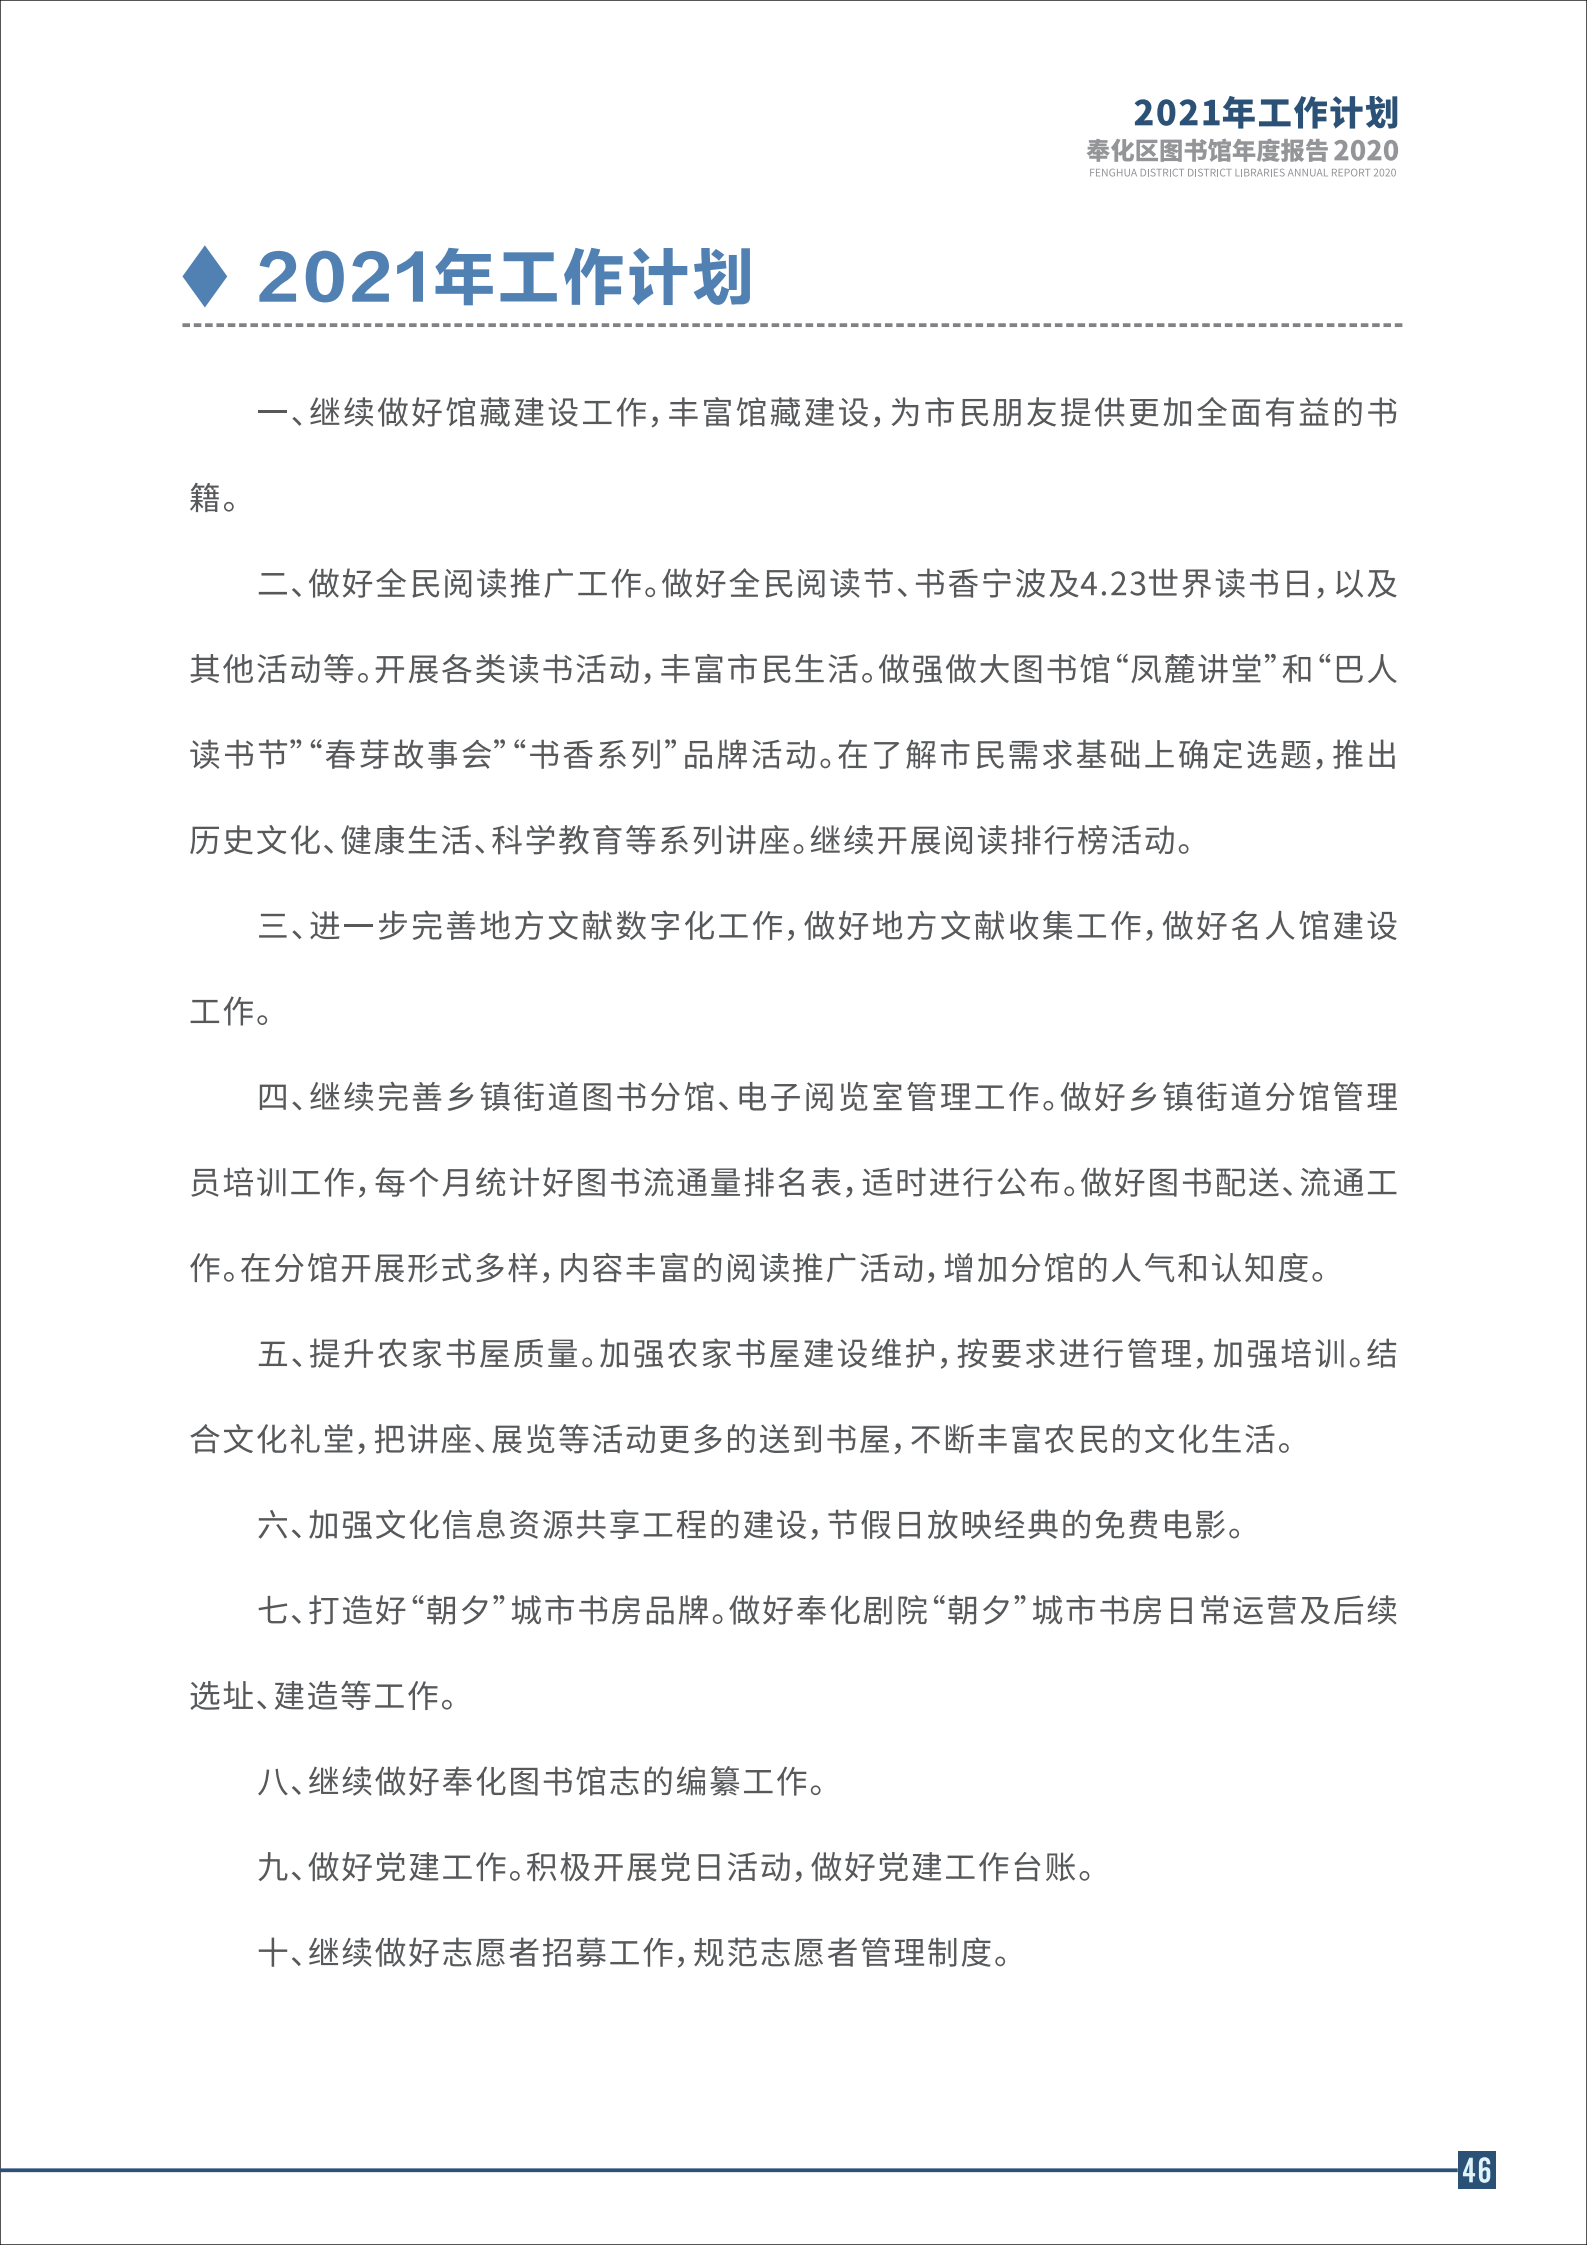 宁波市奉化区图书馆2020年年度报告 终稿_46.png